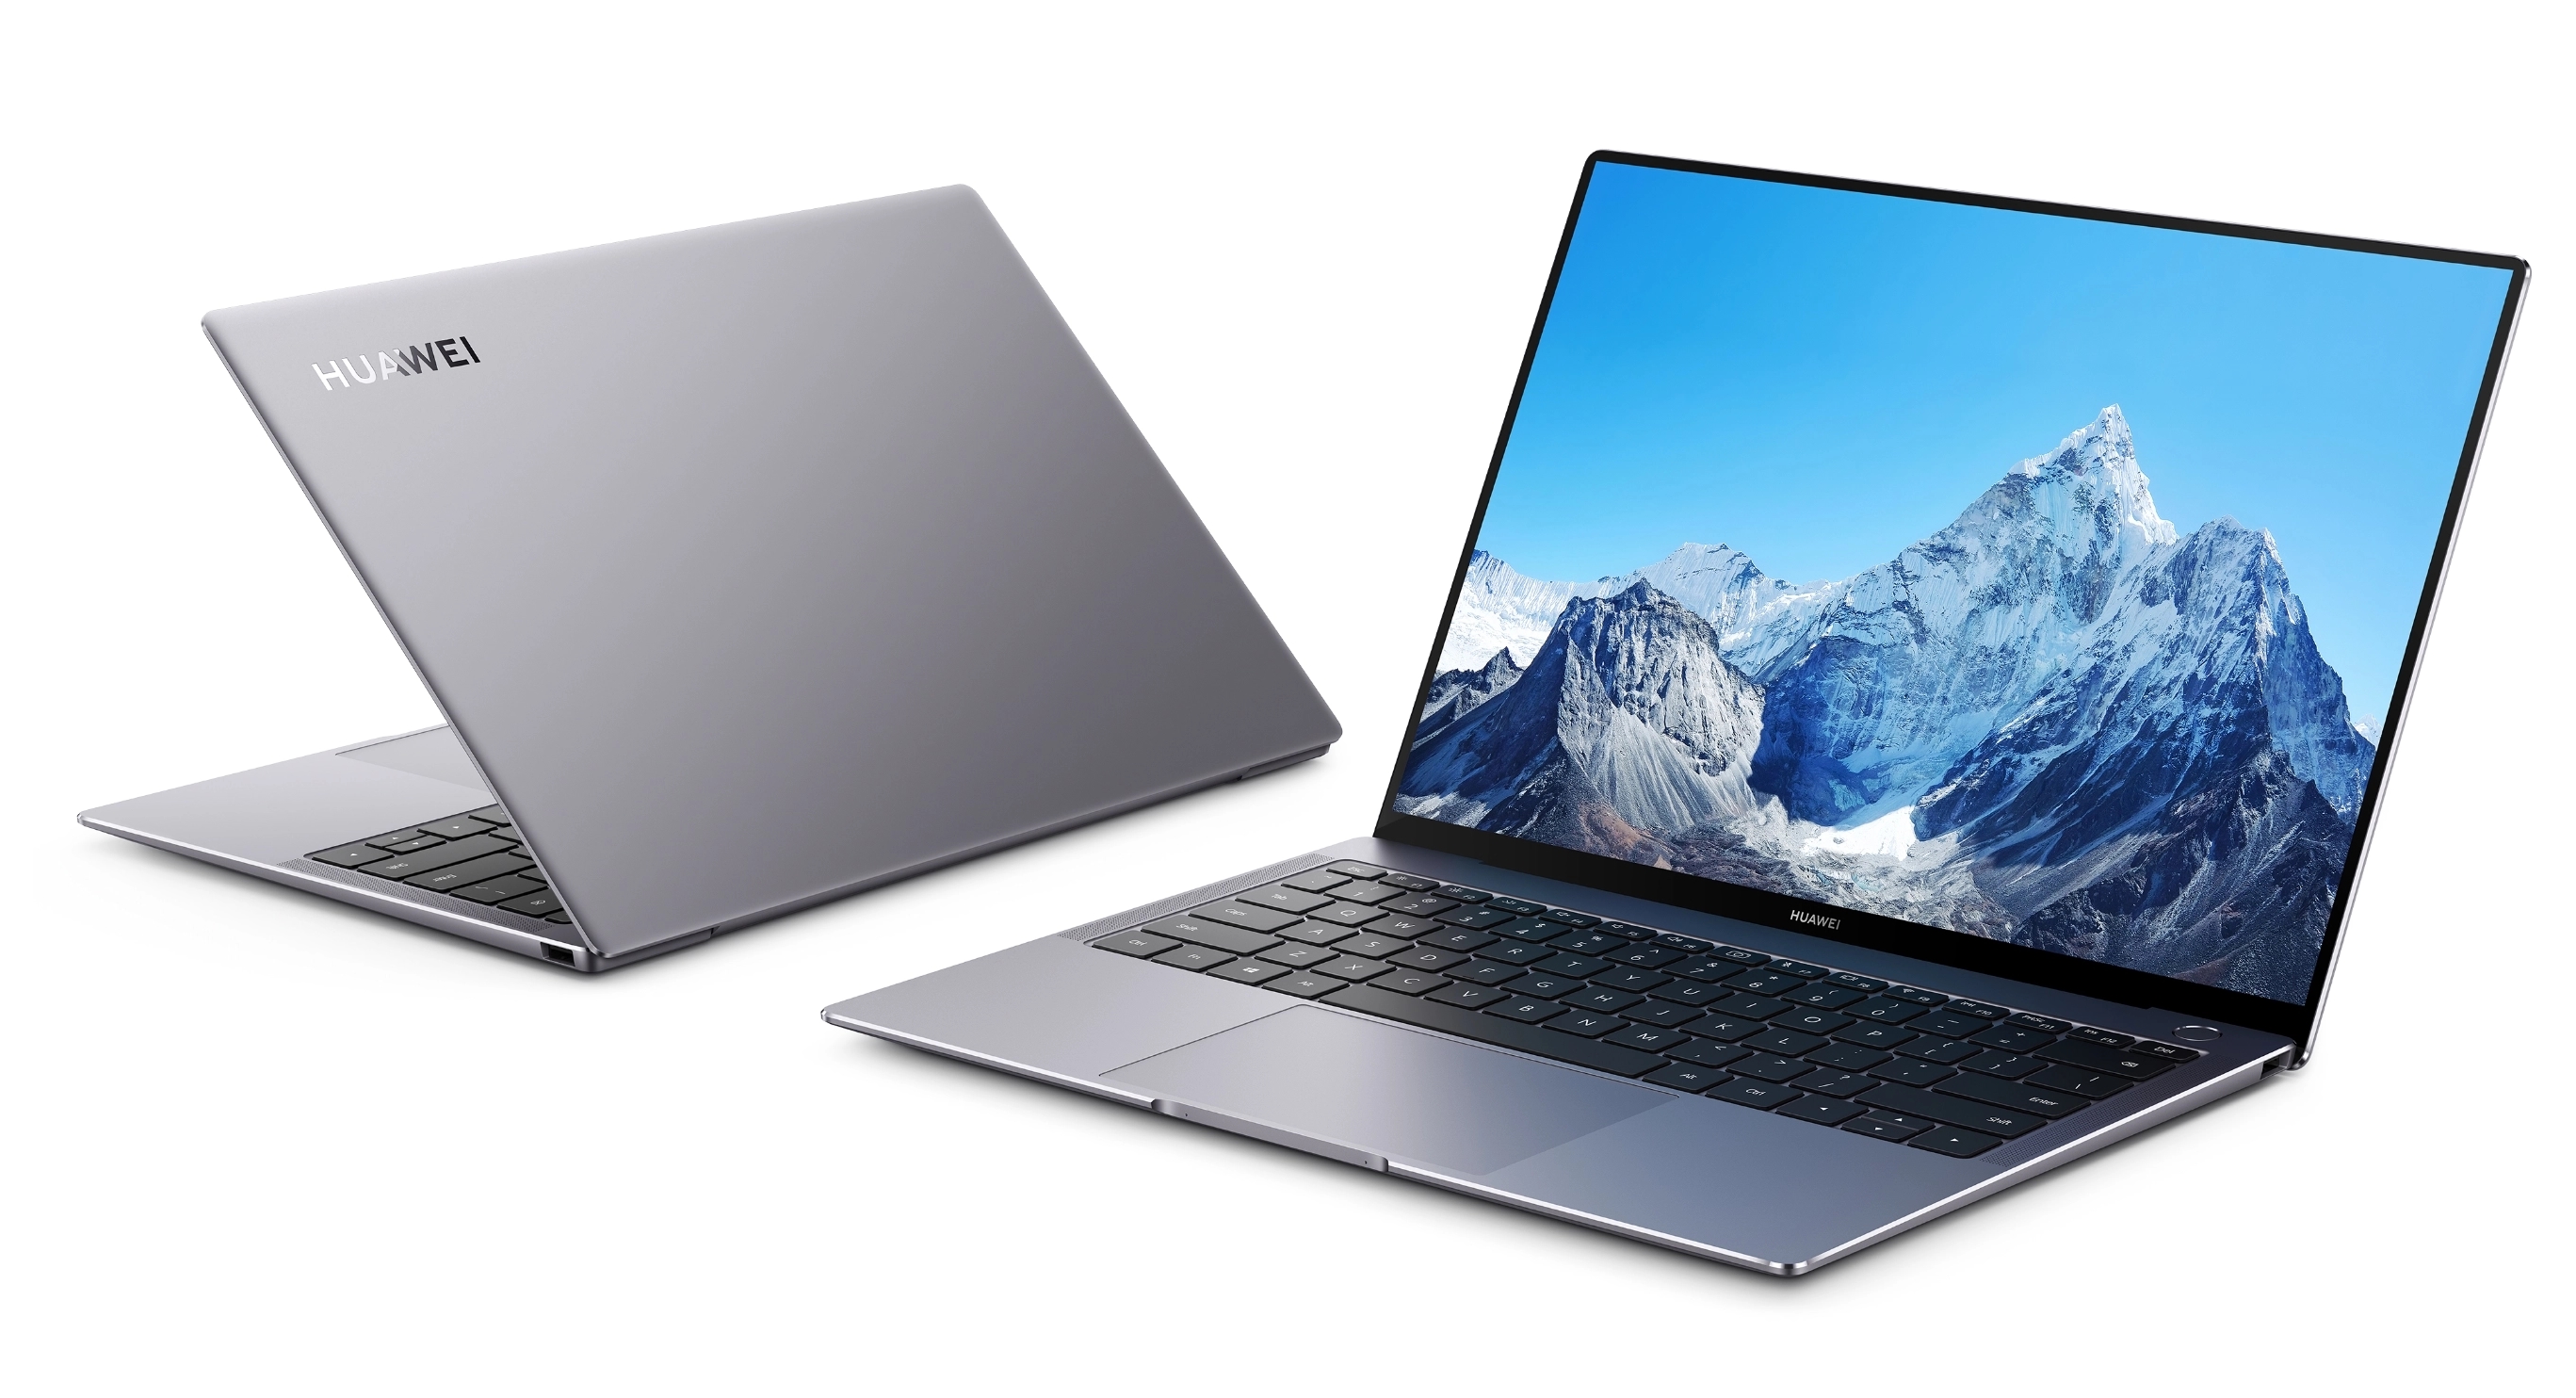 Huawei stellt aktualisierte MateBook B-Notebook-Reihe vor: drei Modelle, Intel Core-Prozessoren der 11. Generation und TPM 2.0-Sicherheitschip